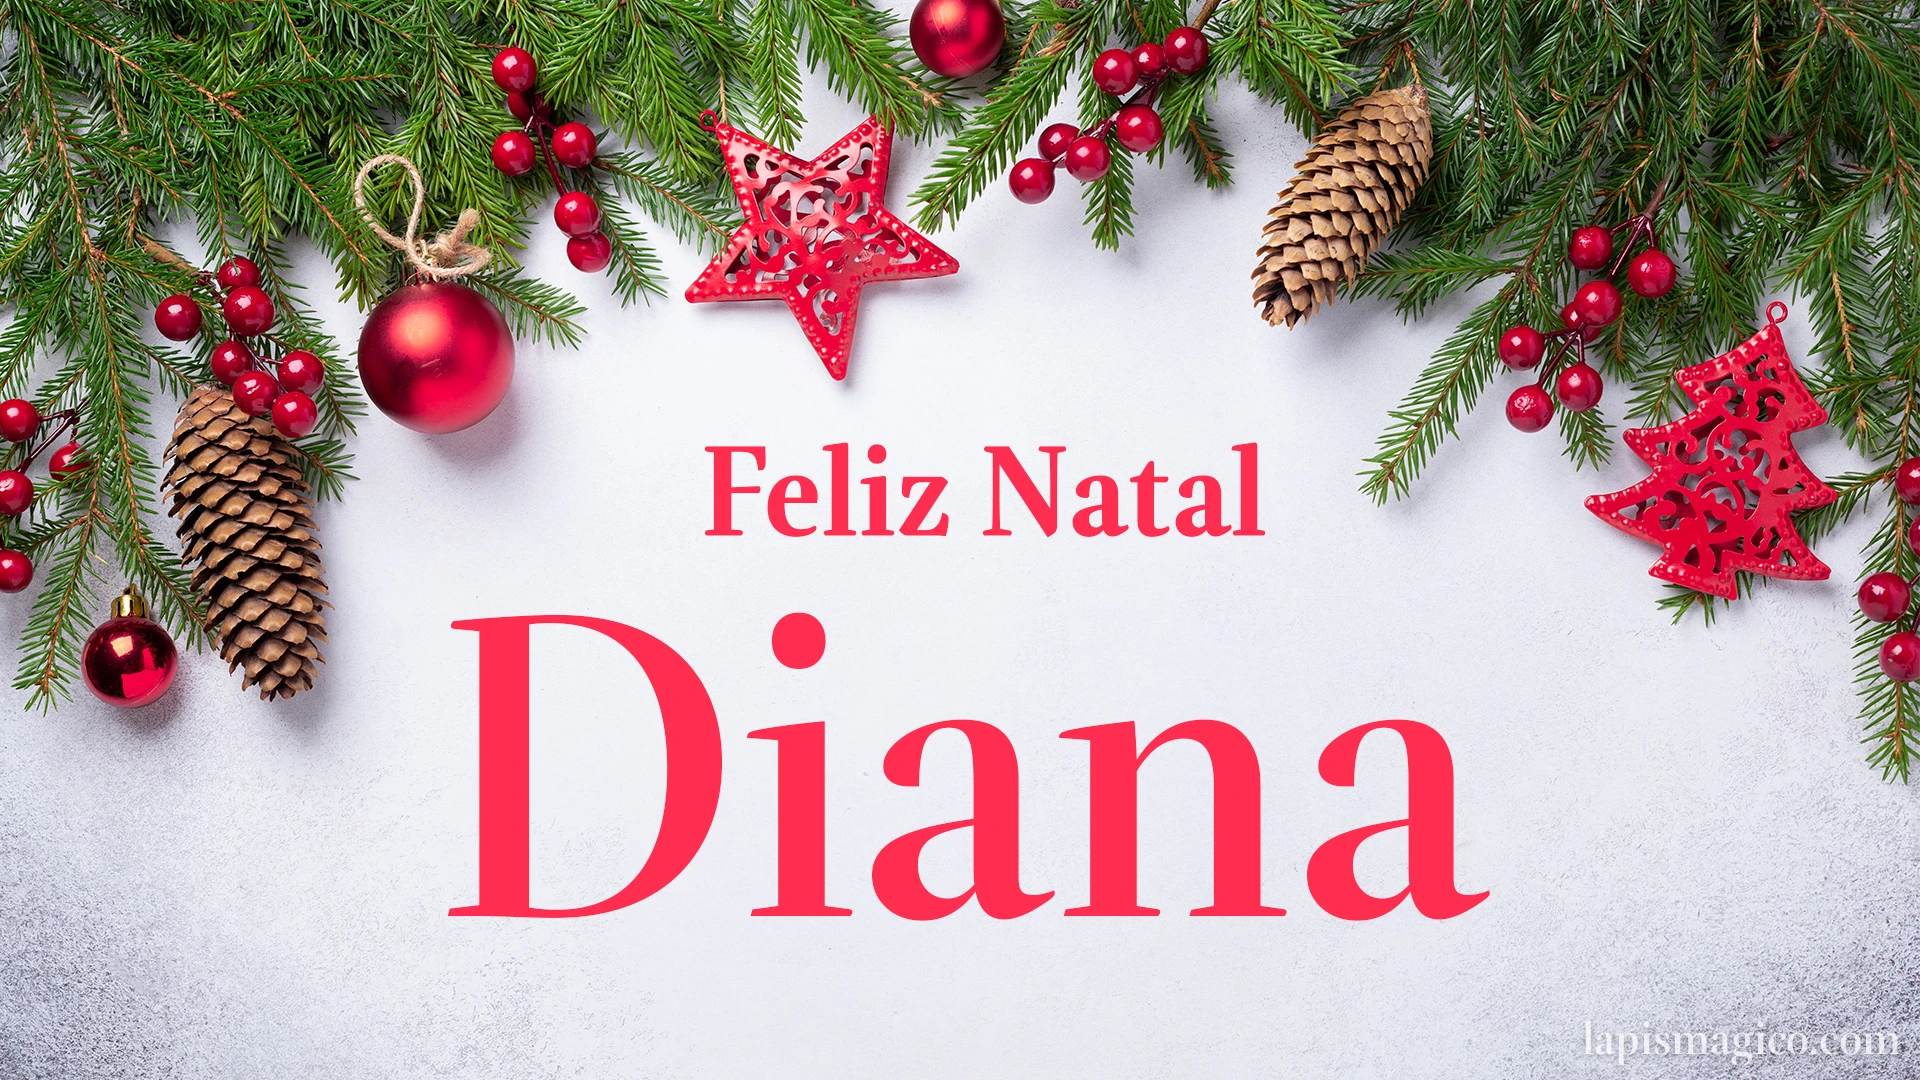 Oh Diana, cinco postais de Feliz Natal Postal com o teu nome